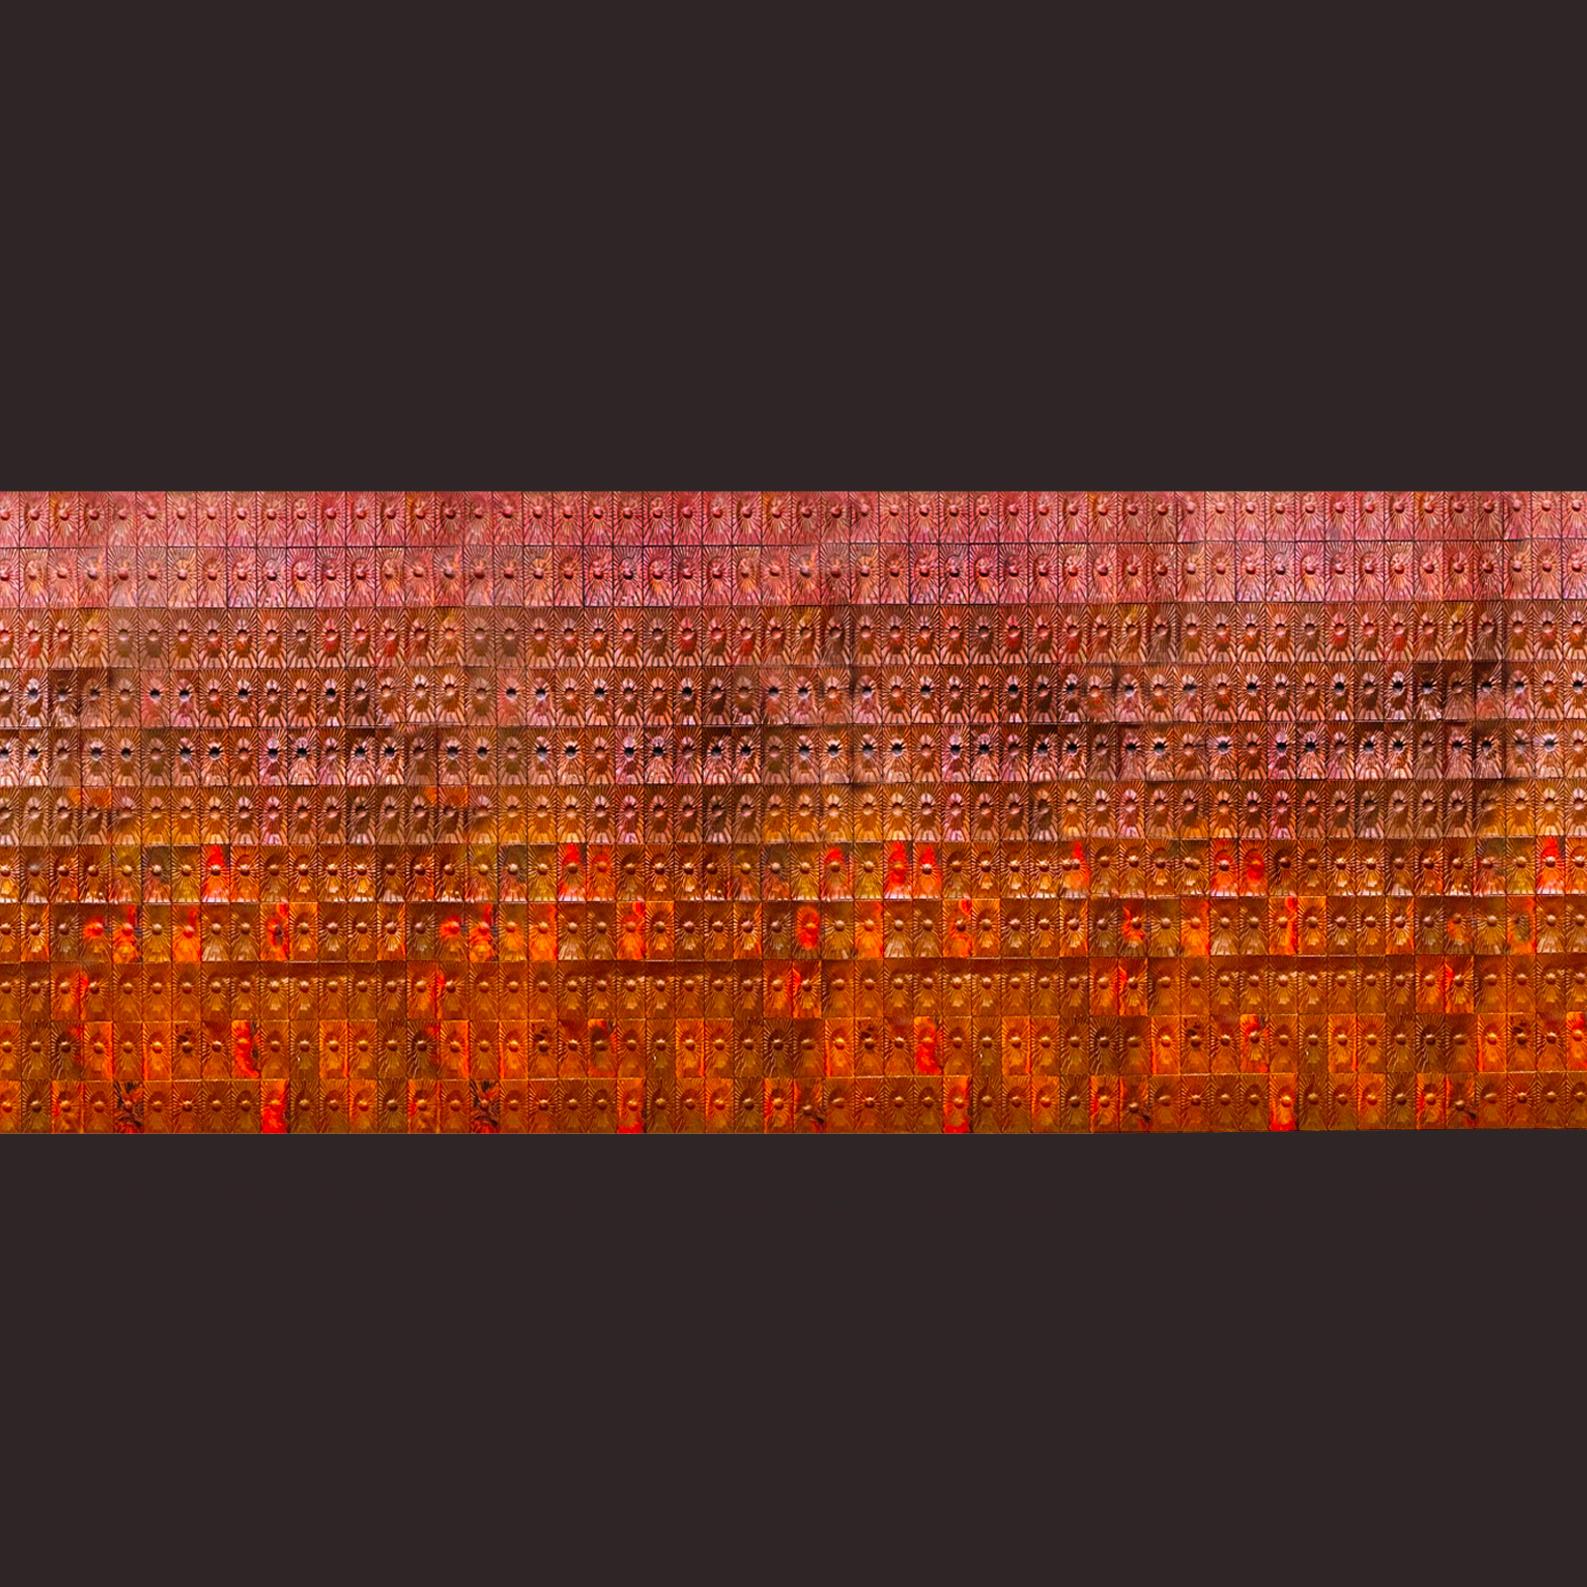 Auffällige Wandverkleidung aus Kupfer, entworfen von Edit Oborzil und Tibor Jeney,

cca. 1968 für das Hotel Helikon - Balaton Keszthely, Ungarn. 
Artistische rechteckige Kupferwandfliesen mit einem abstrakten Sonnenmotiv in konkaver, konvexer